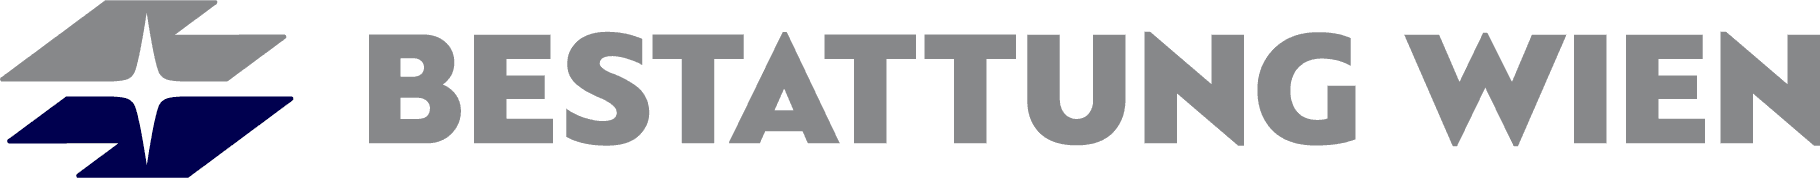 Logo BESTATTUNG WIEN - Kundenservice Stadlau